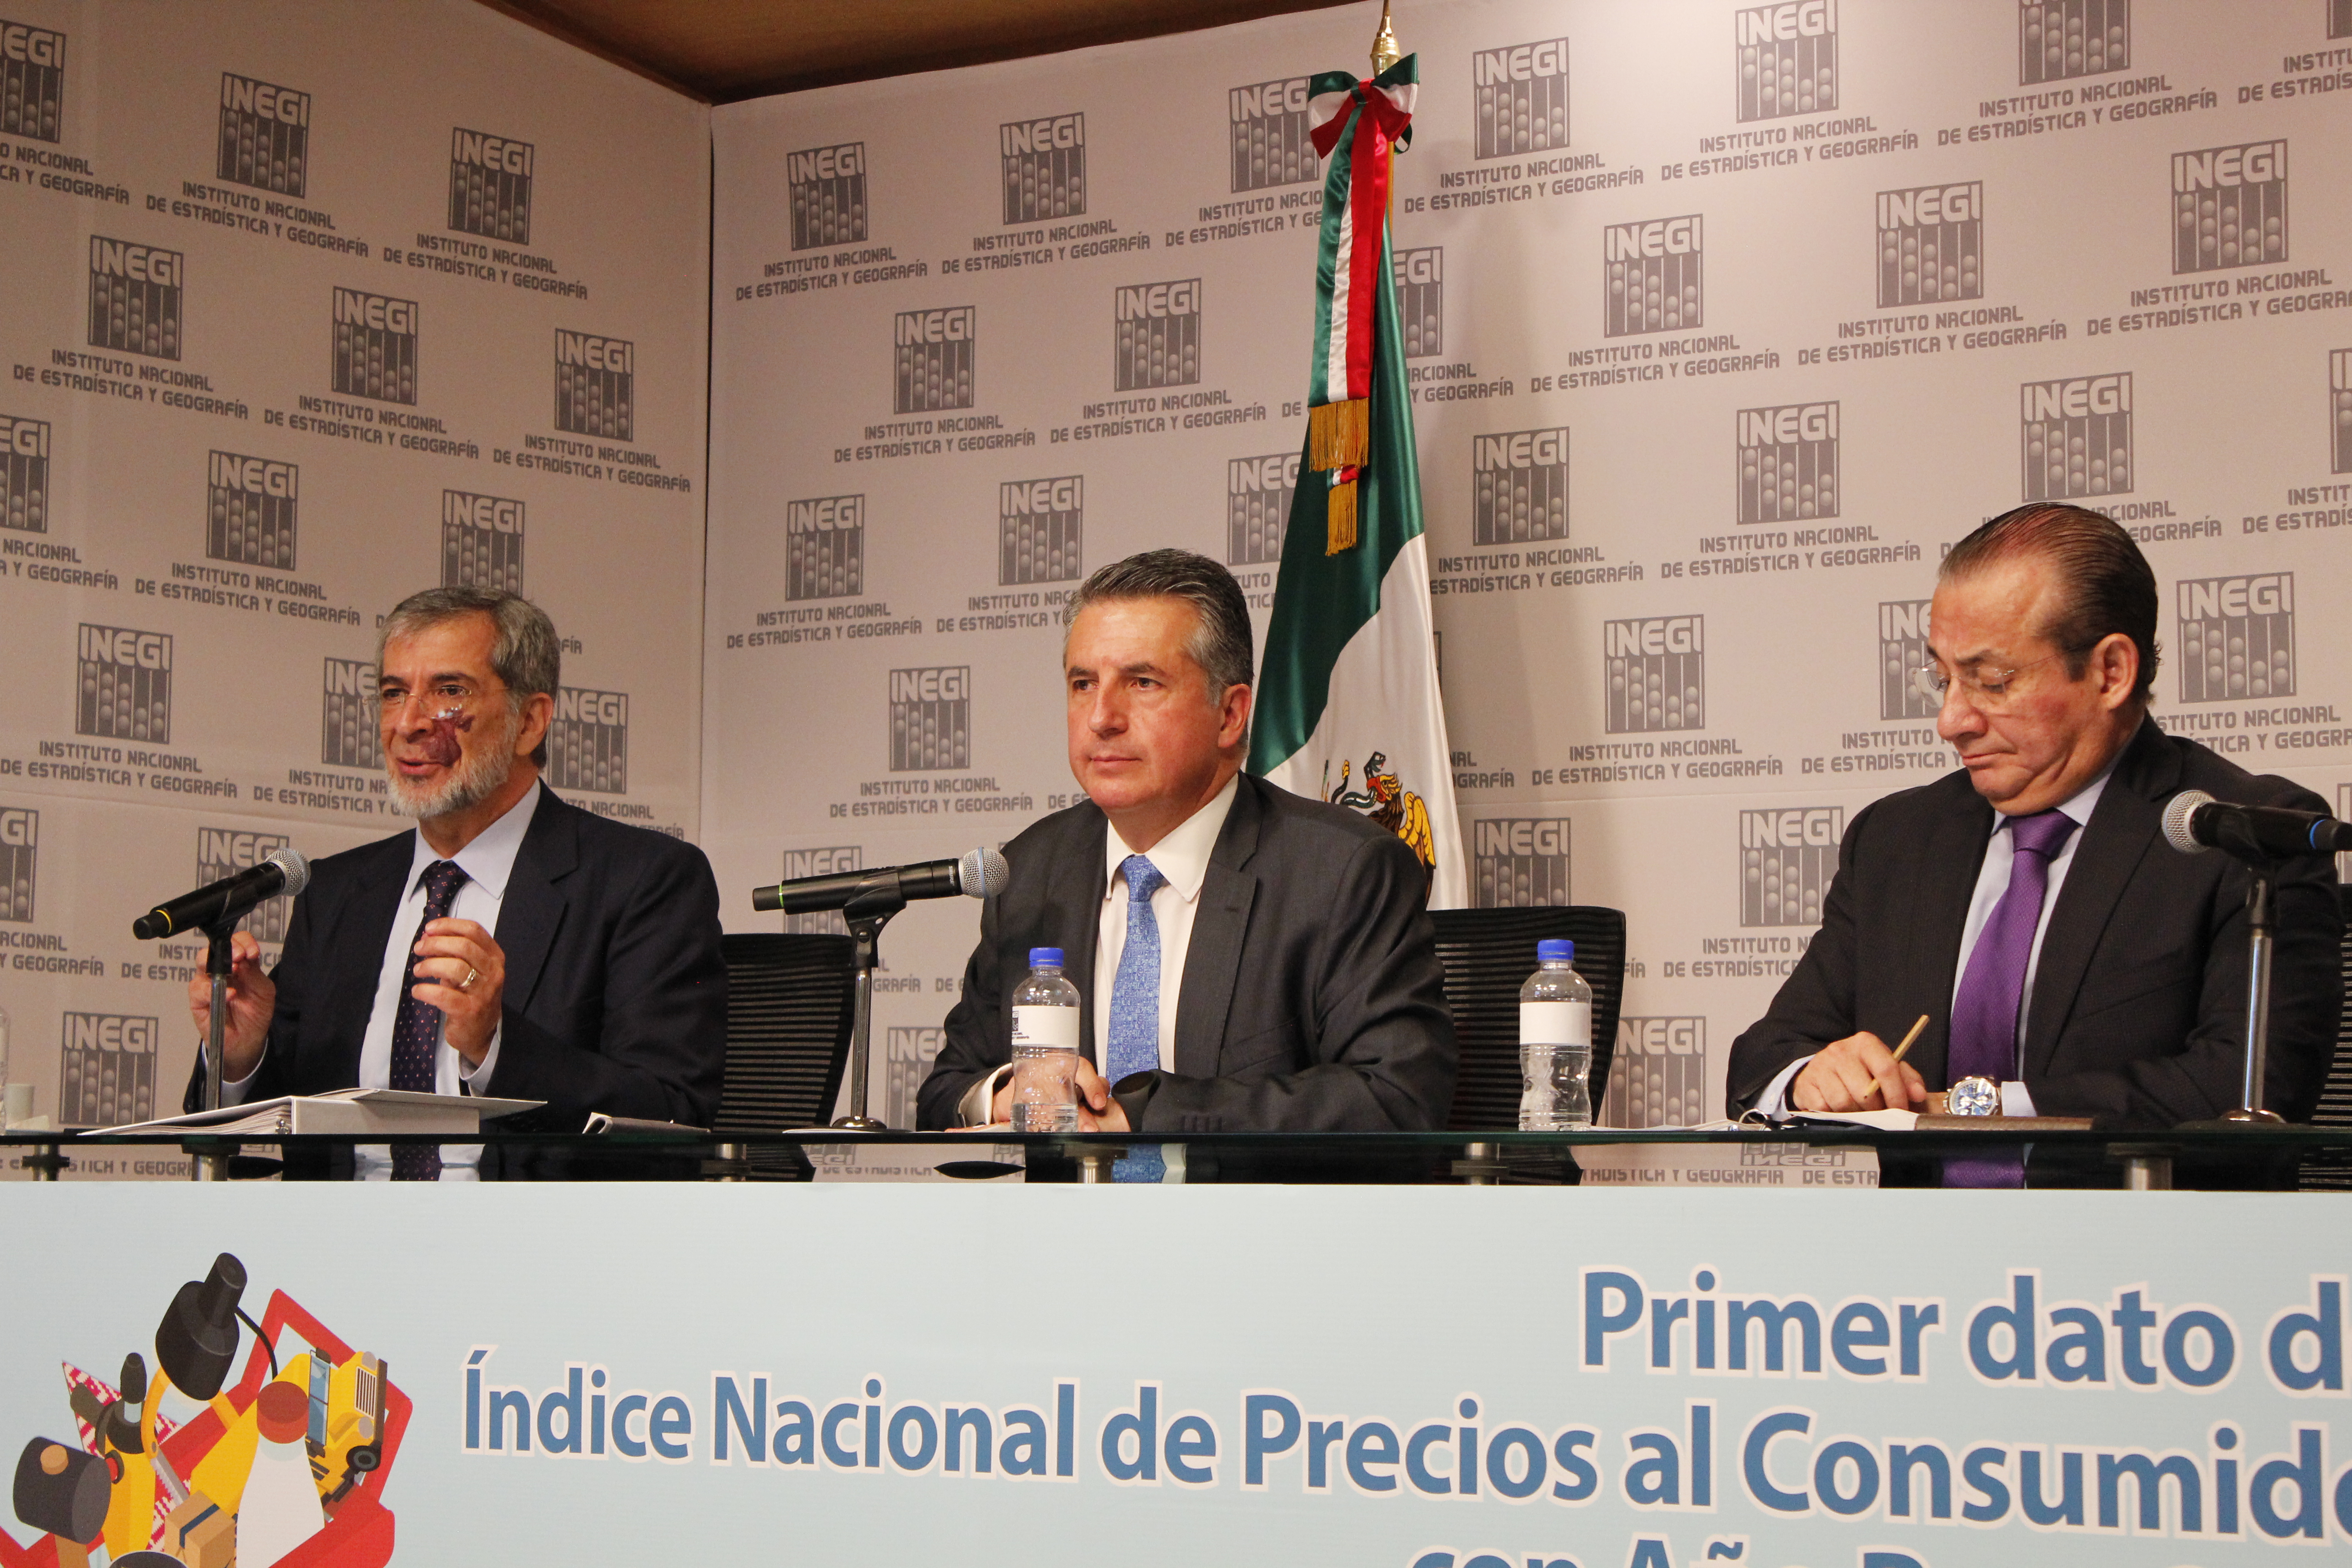 De izquierda a derecha: Arturo Blancas, director general de Estadísticas Económicas; Julio Santaella Castell, presidente del Inegi; y Jorge Reyes, director general adjunto de Índices de Precios.